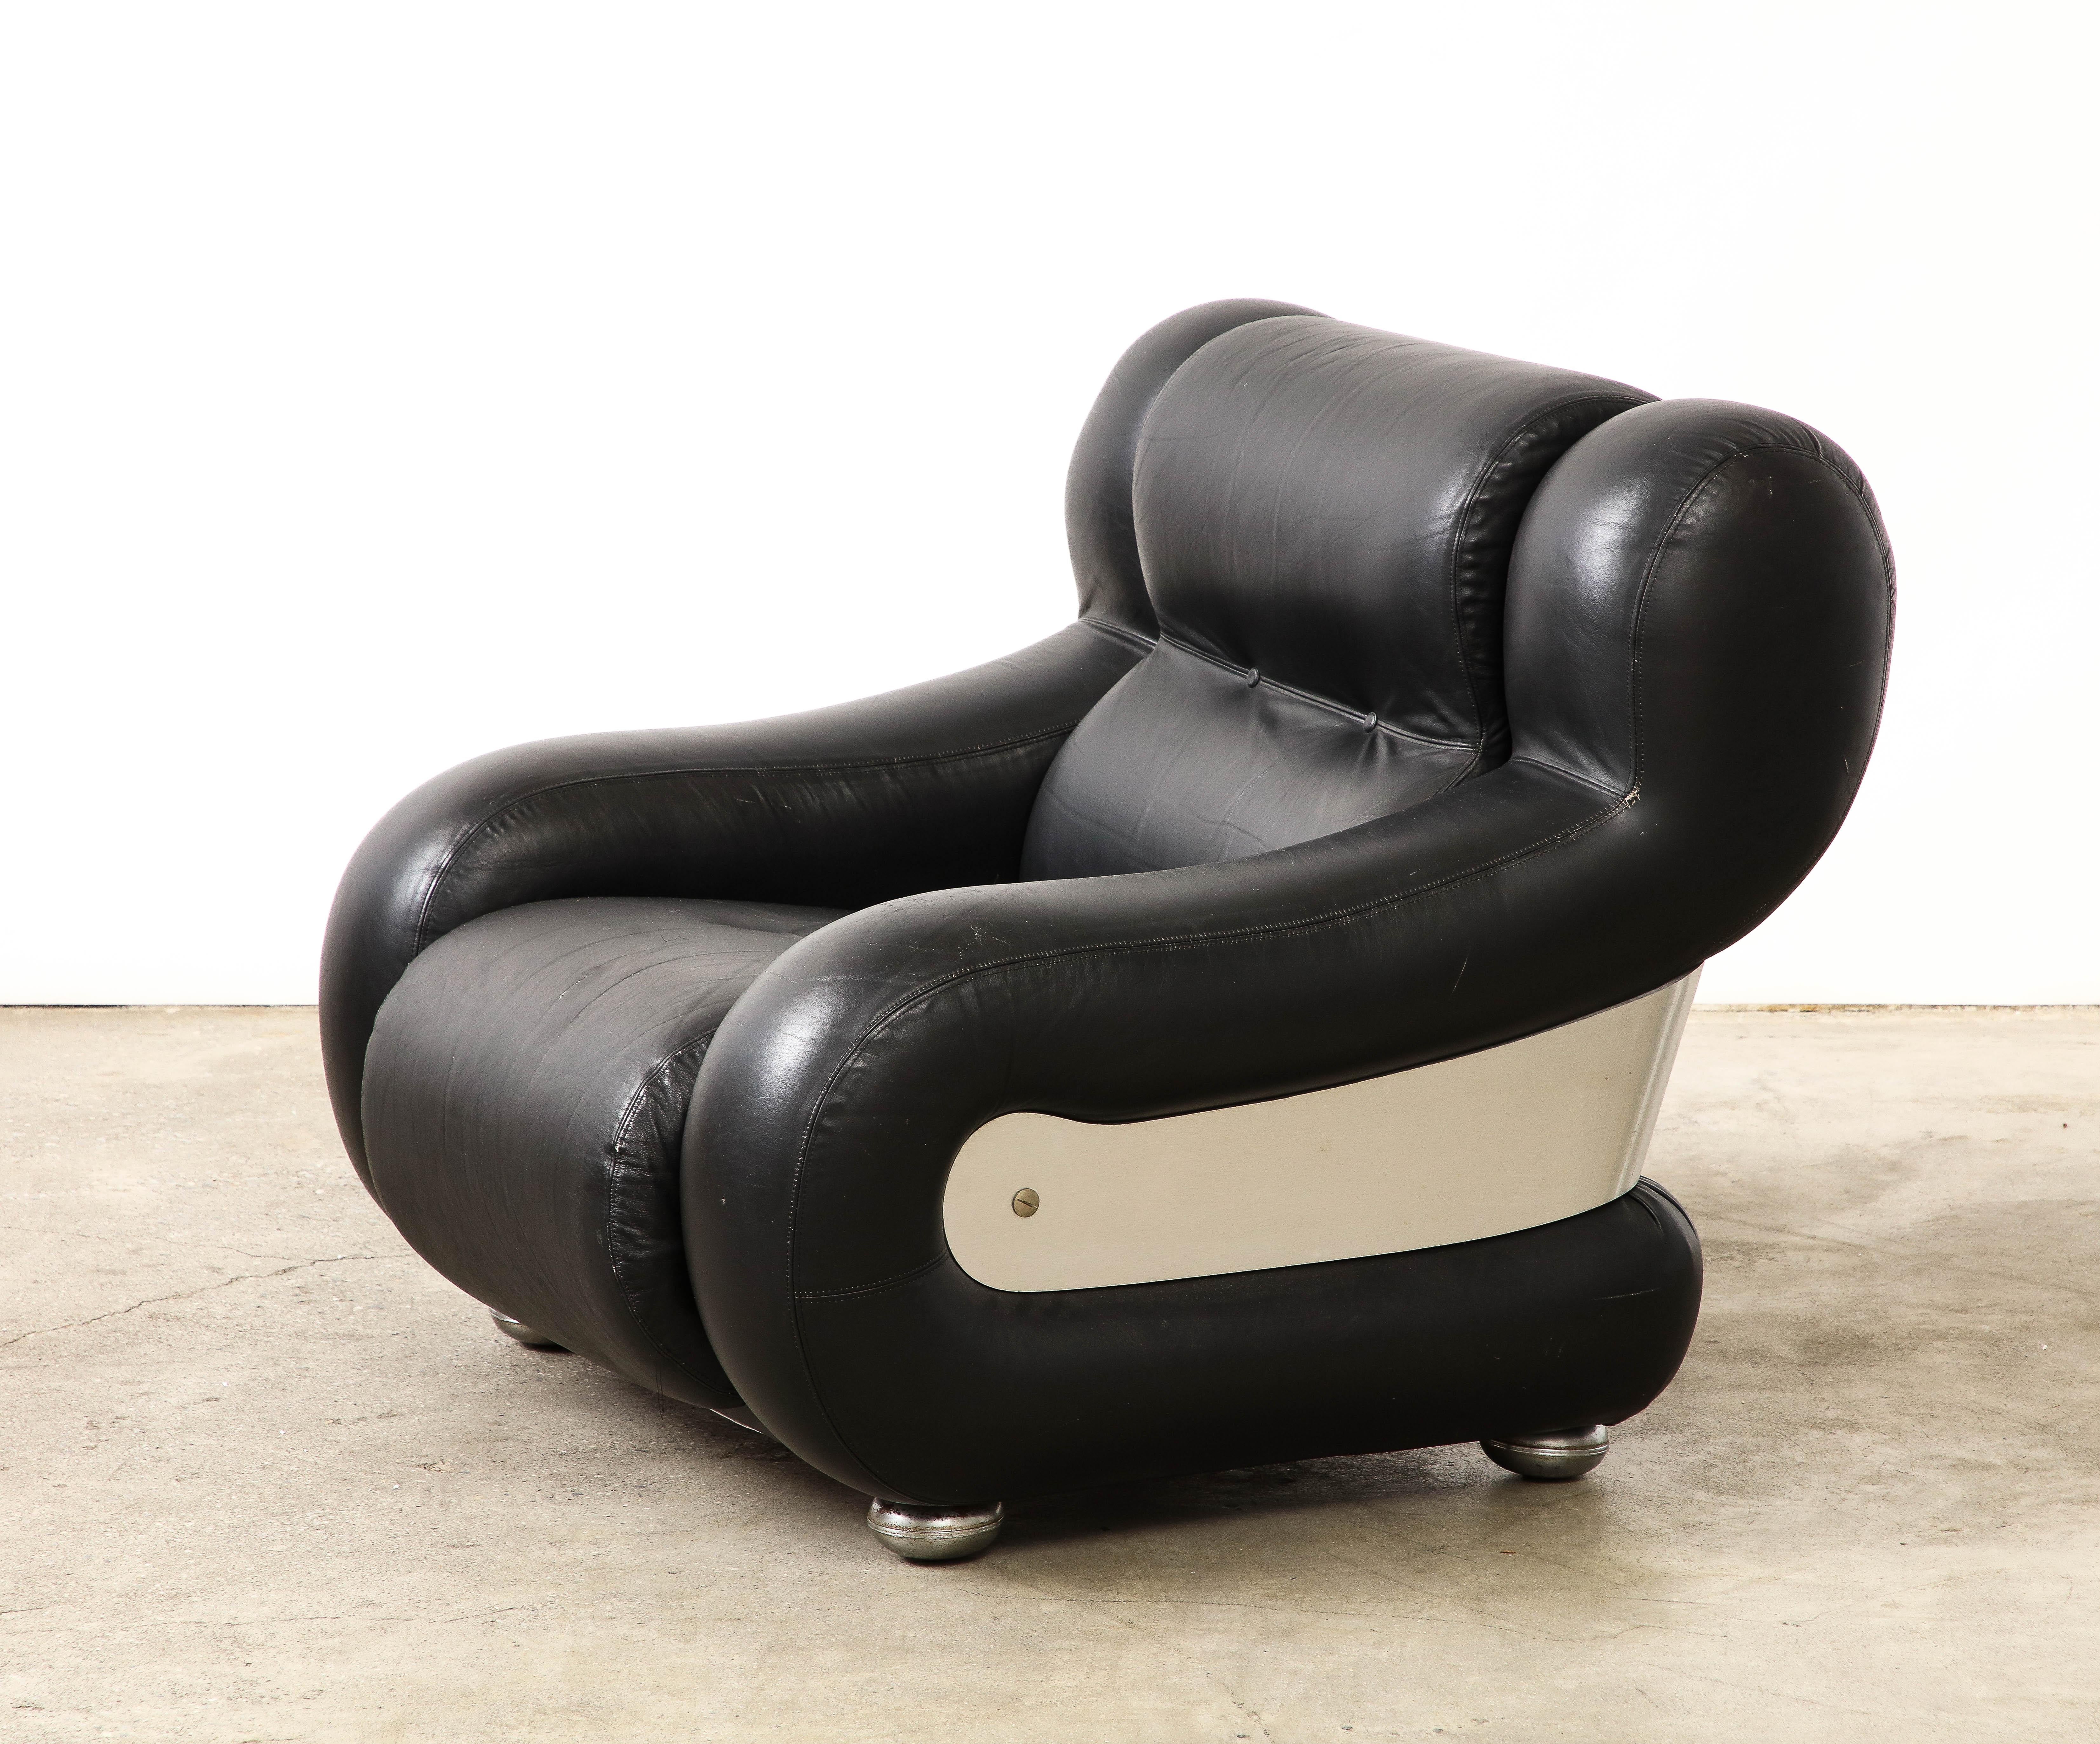 Dieser Sessel erinnert an die kühnen, typisch italienischen Designs von Adriano Piazzesi.